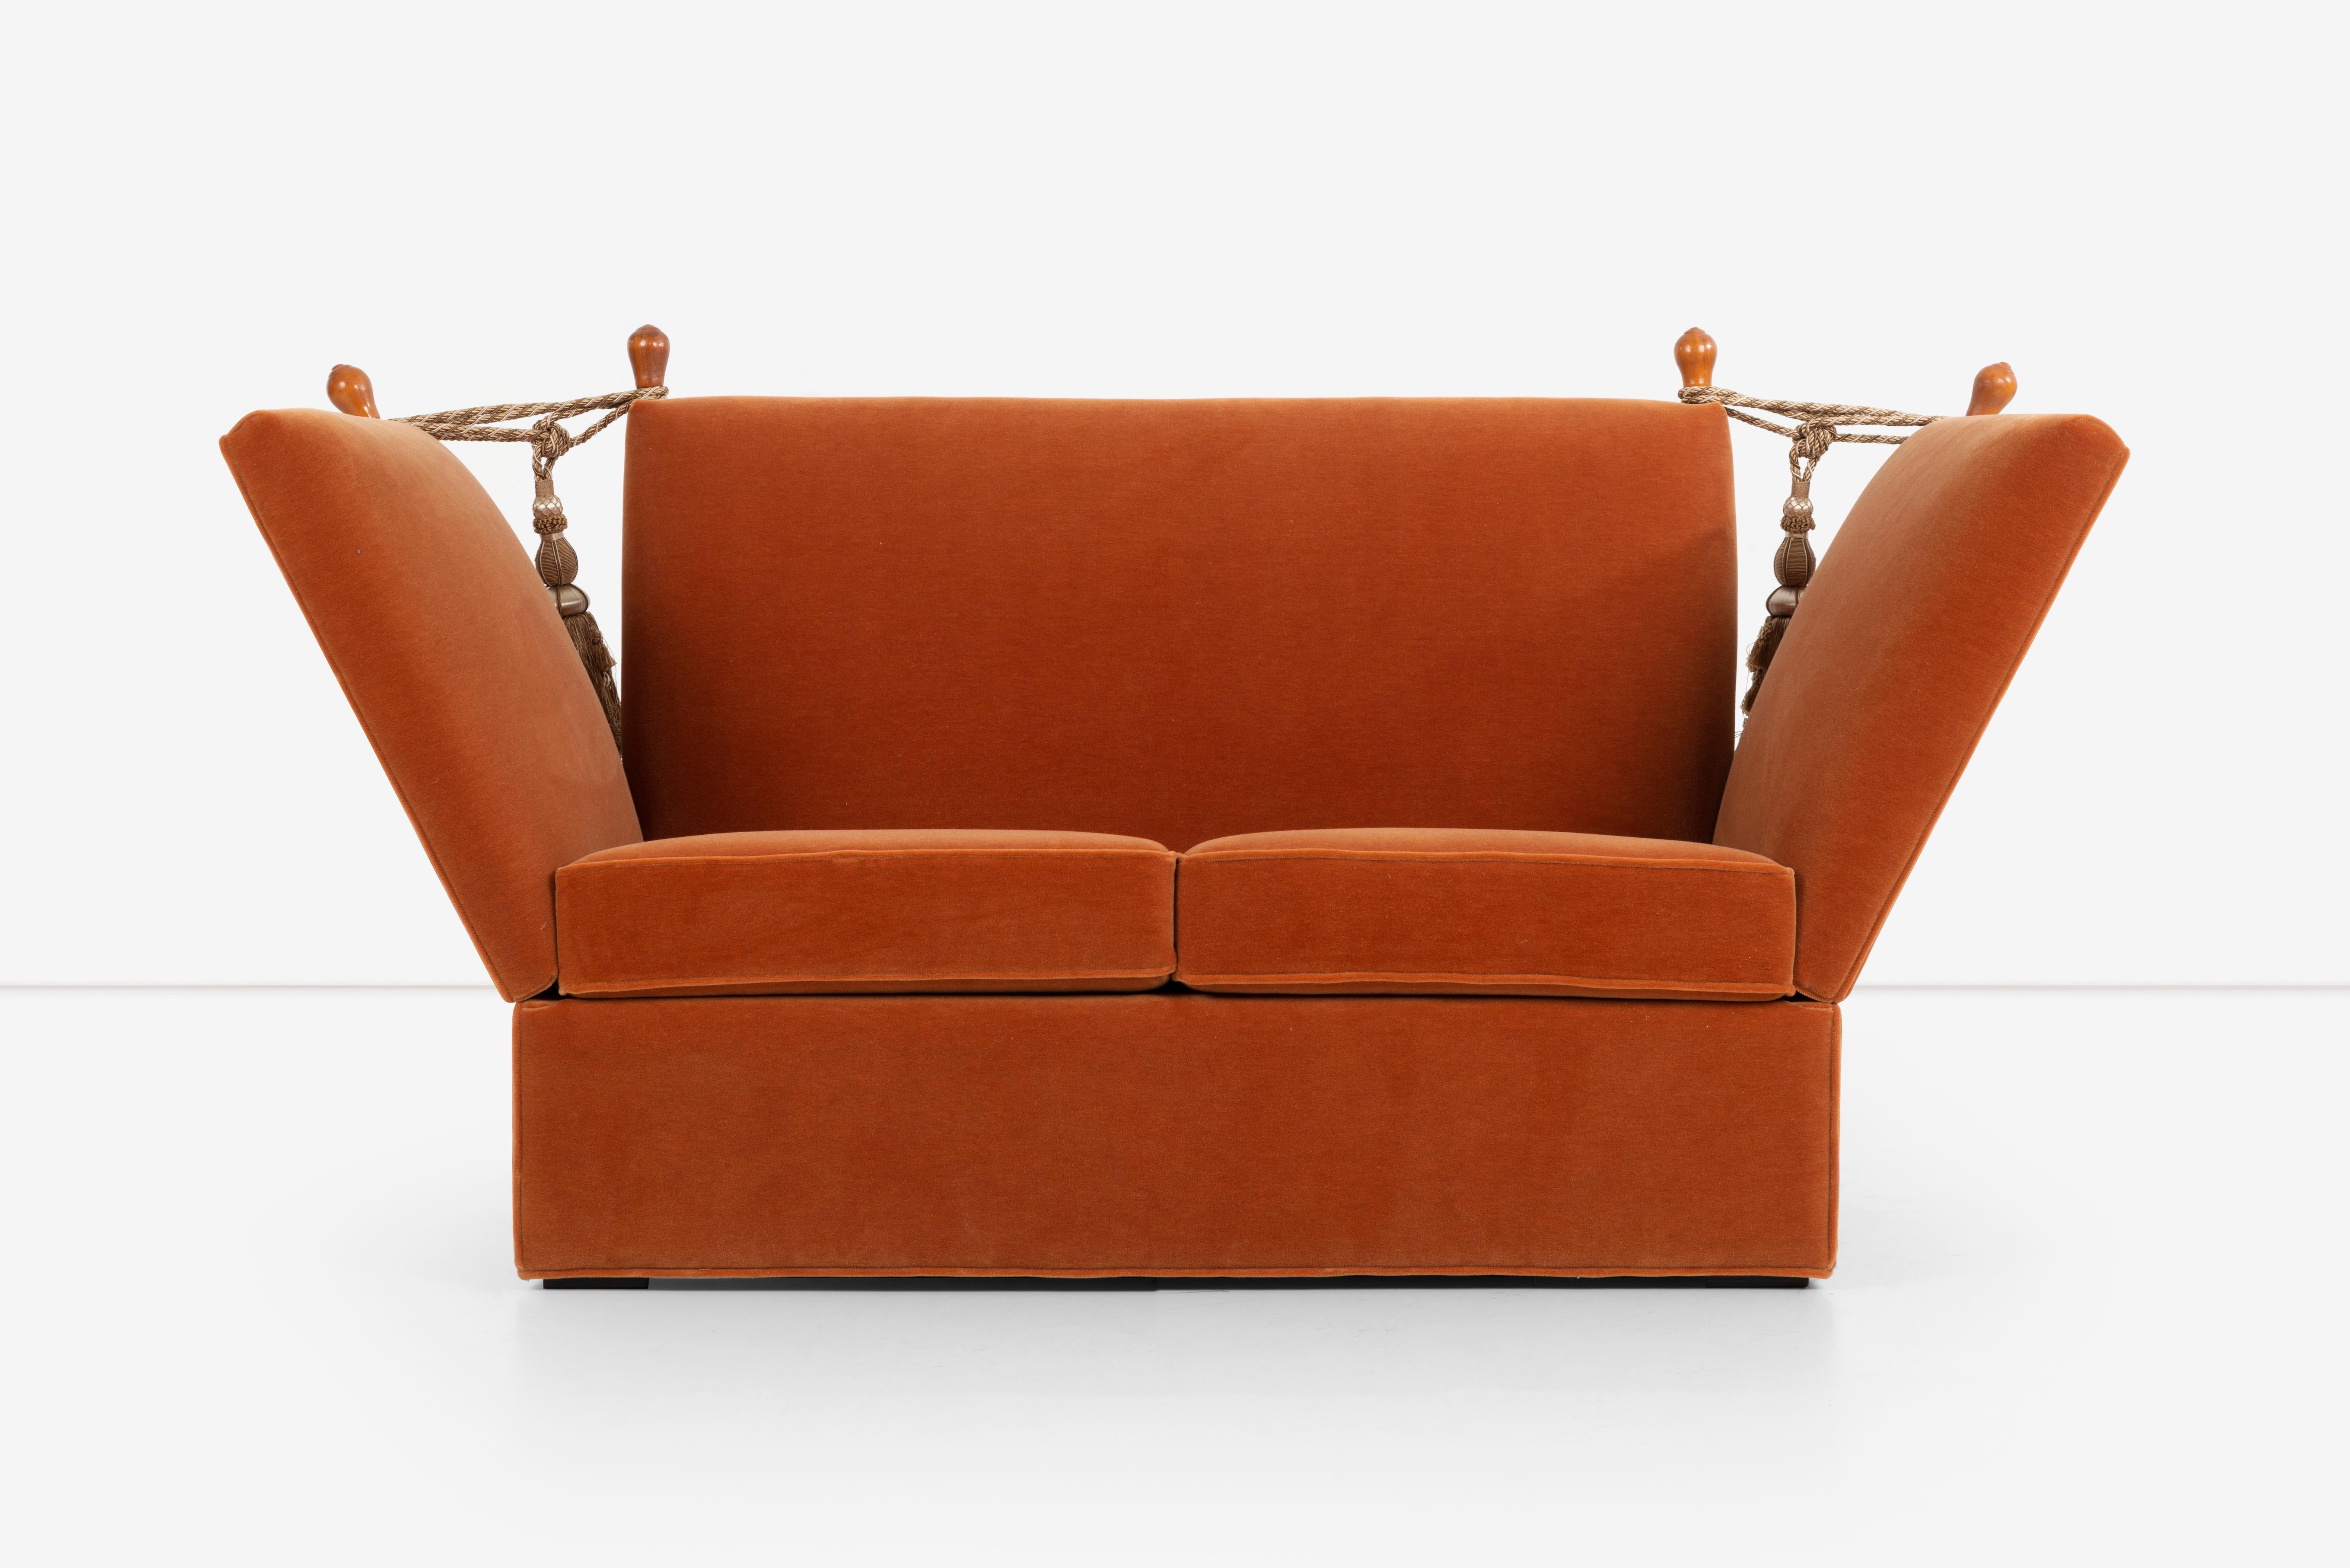 Das Sofa Knole ist ein klassisches englisches Möbelstück, das seit dem 17. Jahrhundert existiert. Dieses besondere Knole-Sofa, das mit orangefarbenem Mohair gepolstert ist, ist ein einzigartiges und stilvolles Stück, das in jedem Raum für Aufsehen